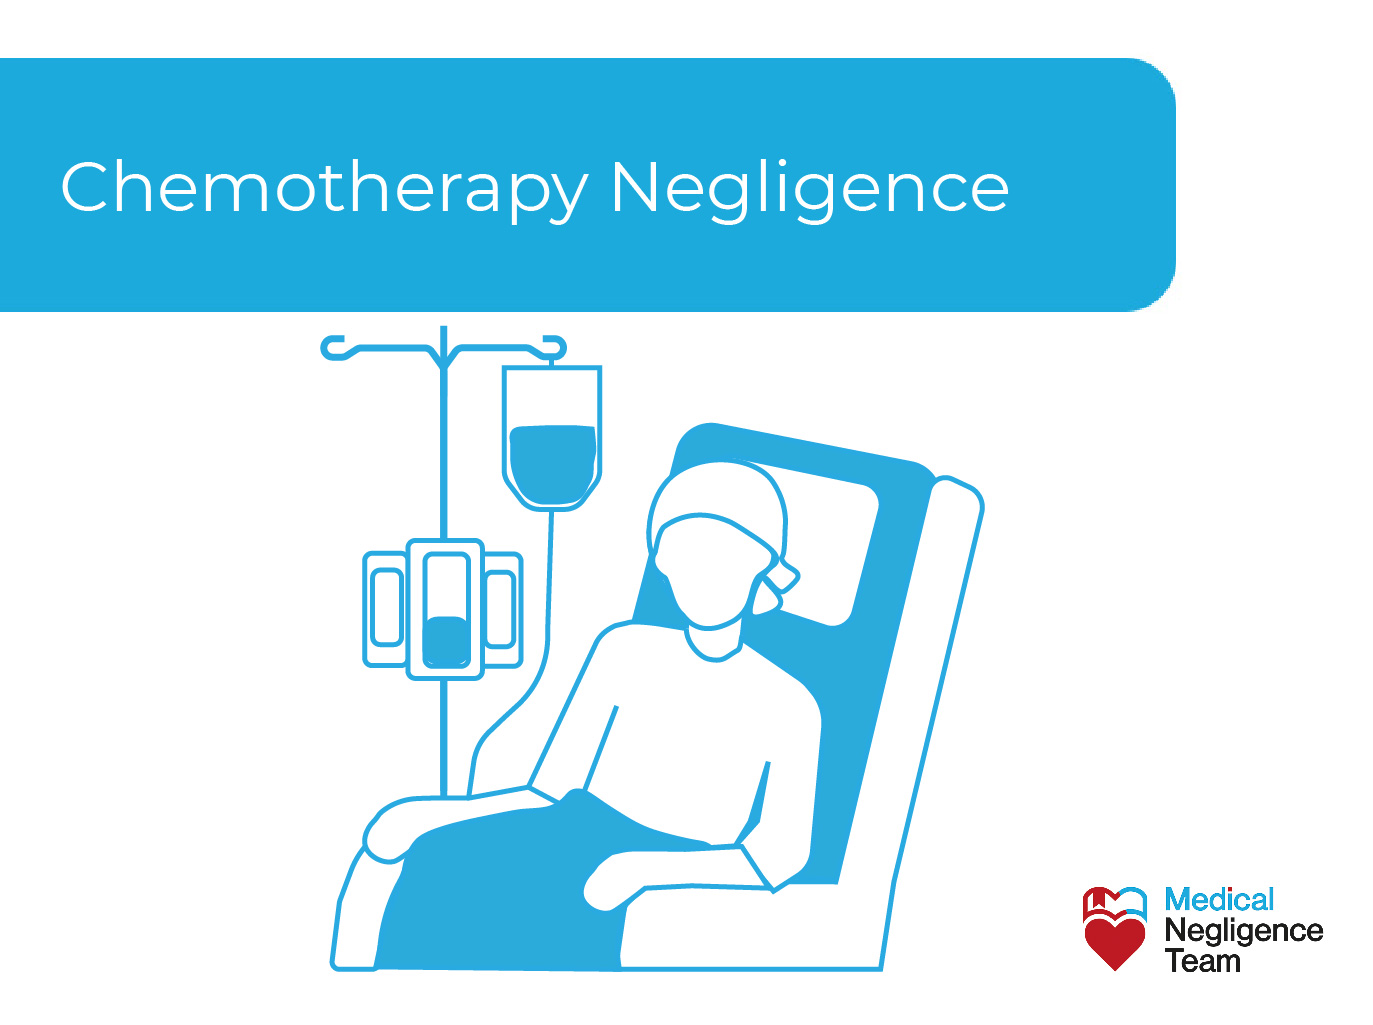 Chemotherapy Negligence